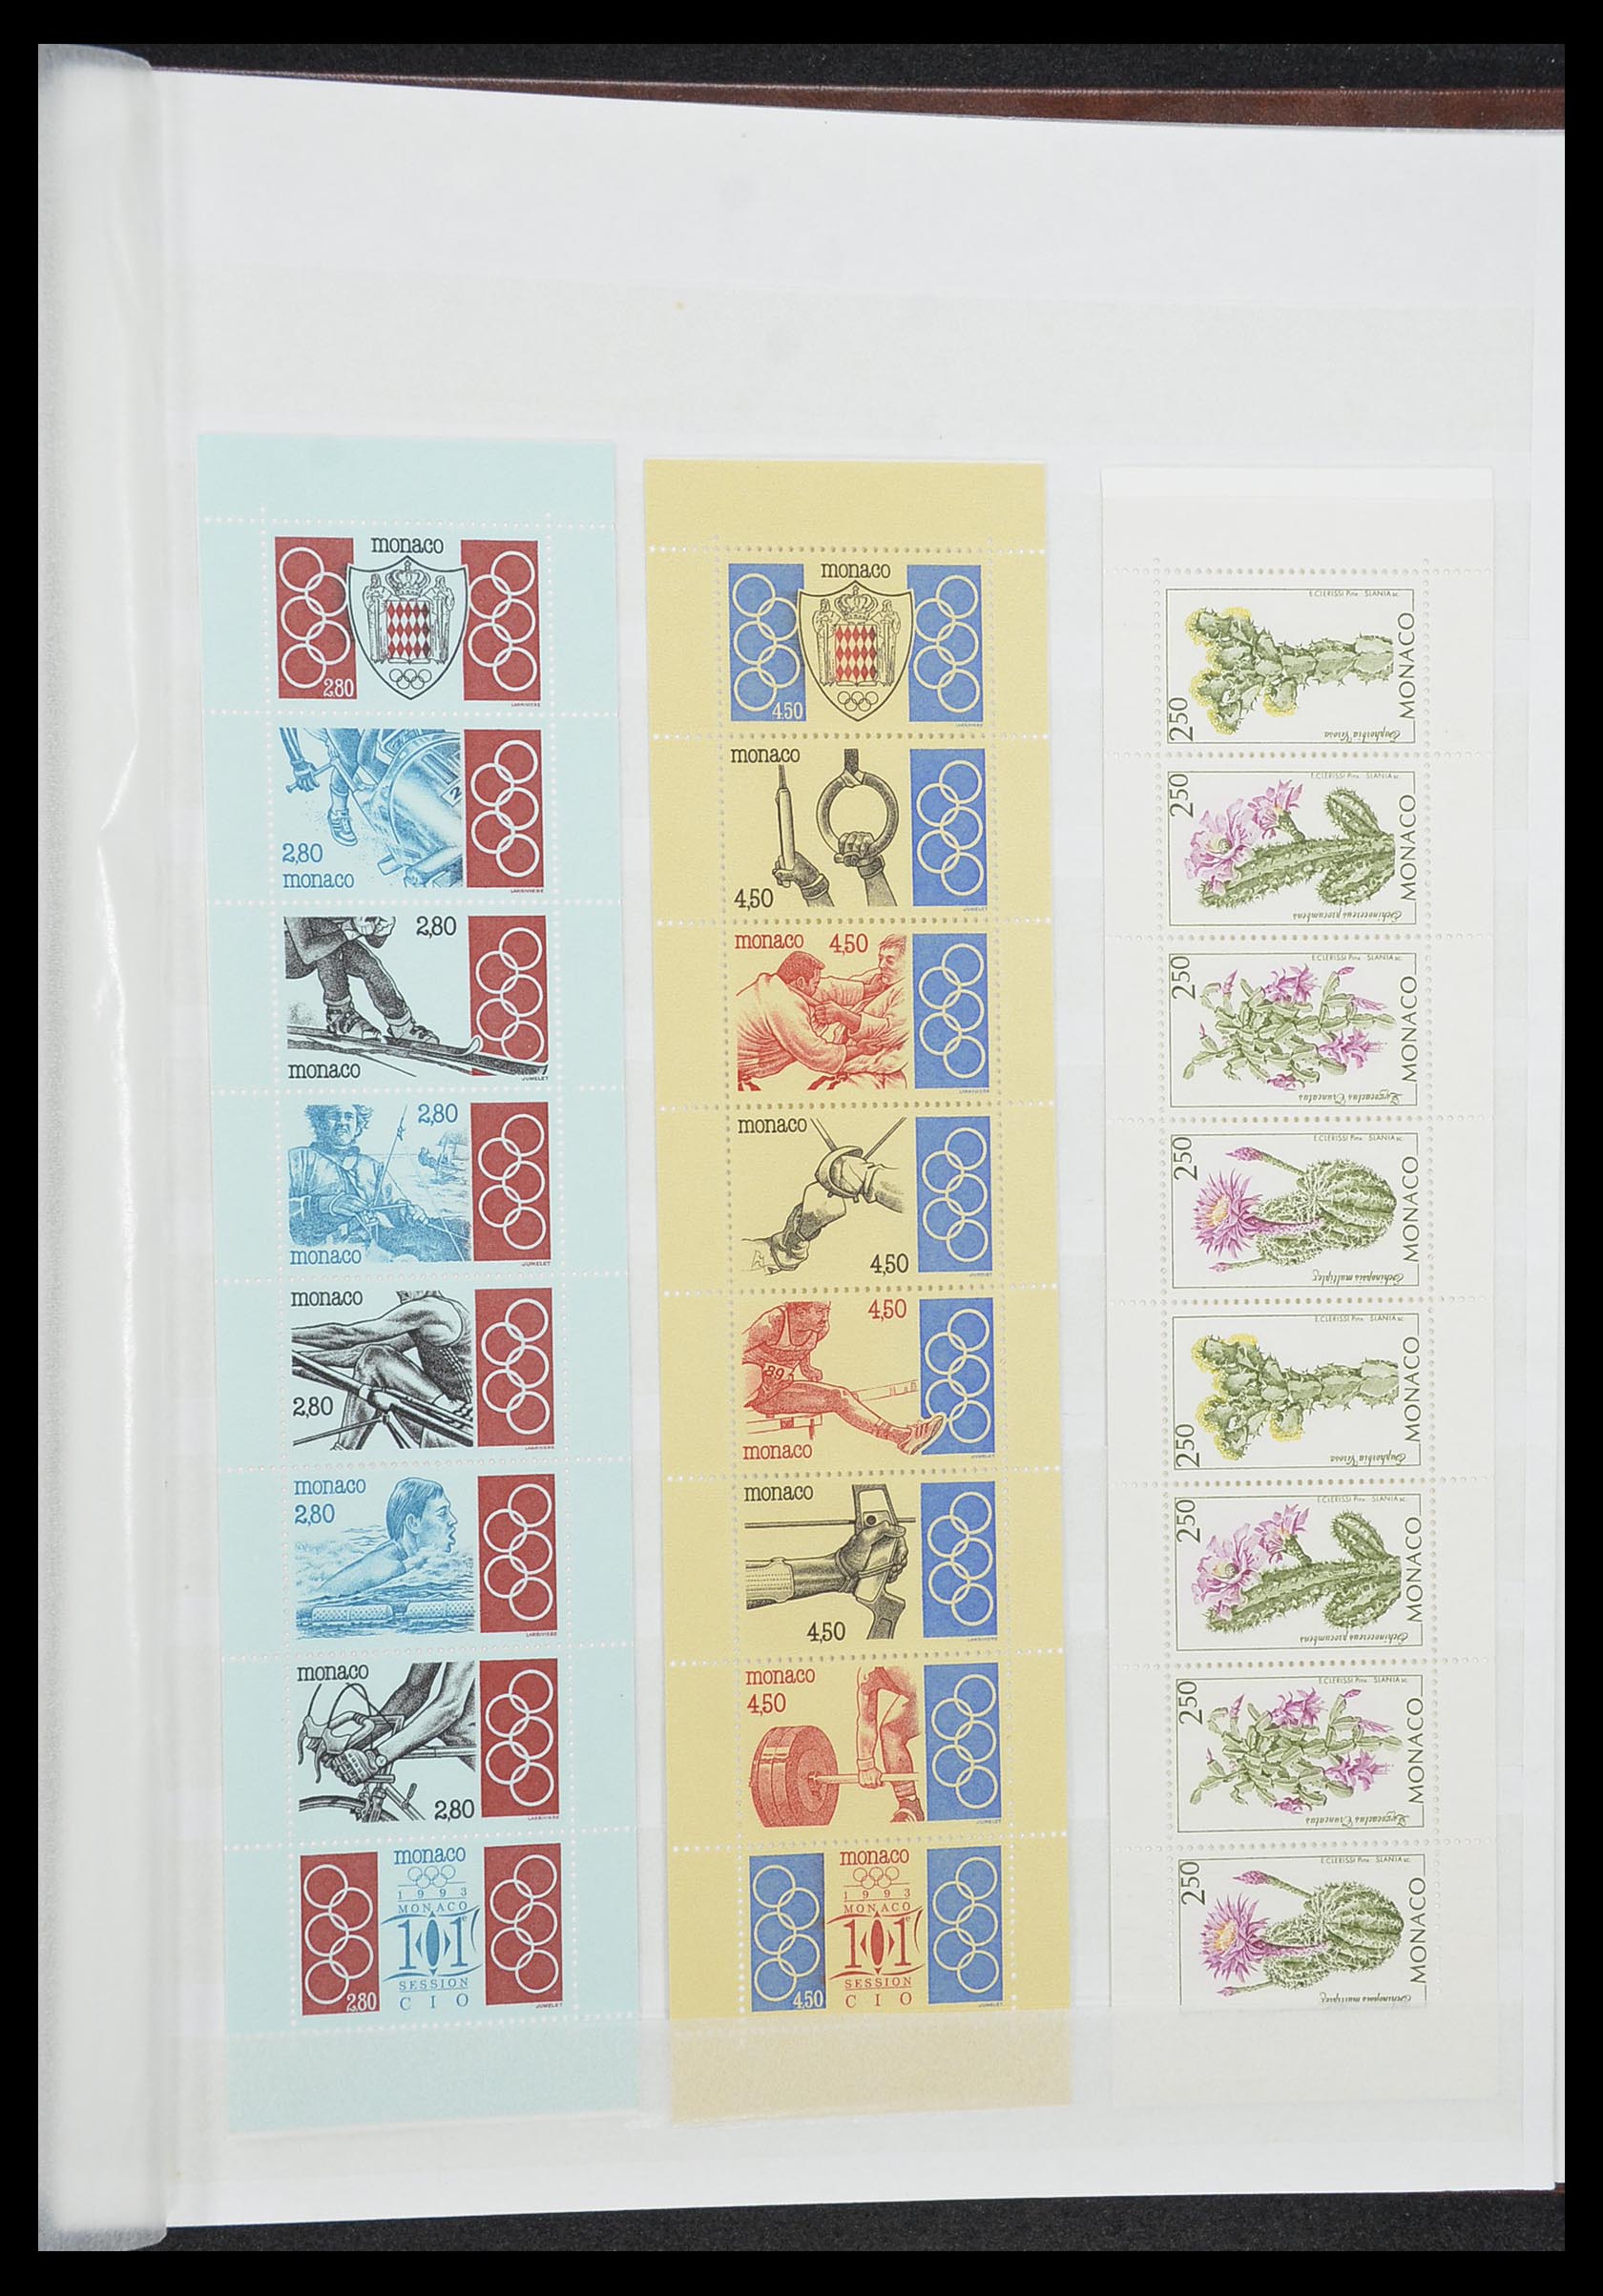 33833 050 - Stamp collection 33833 Monaco souvenir sheets 1979-2015.